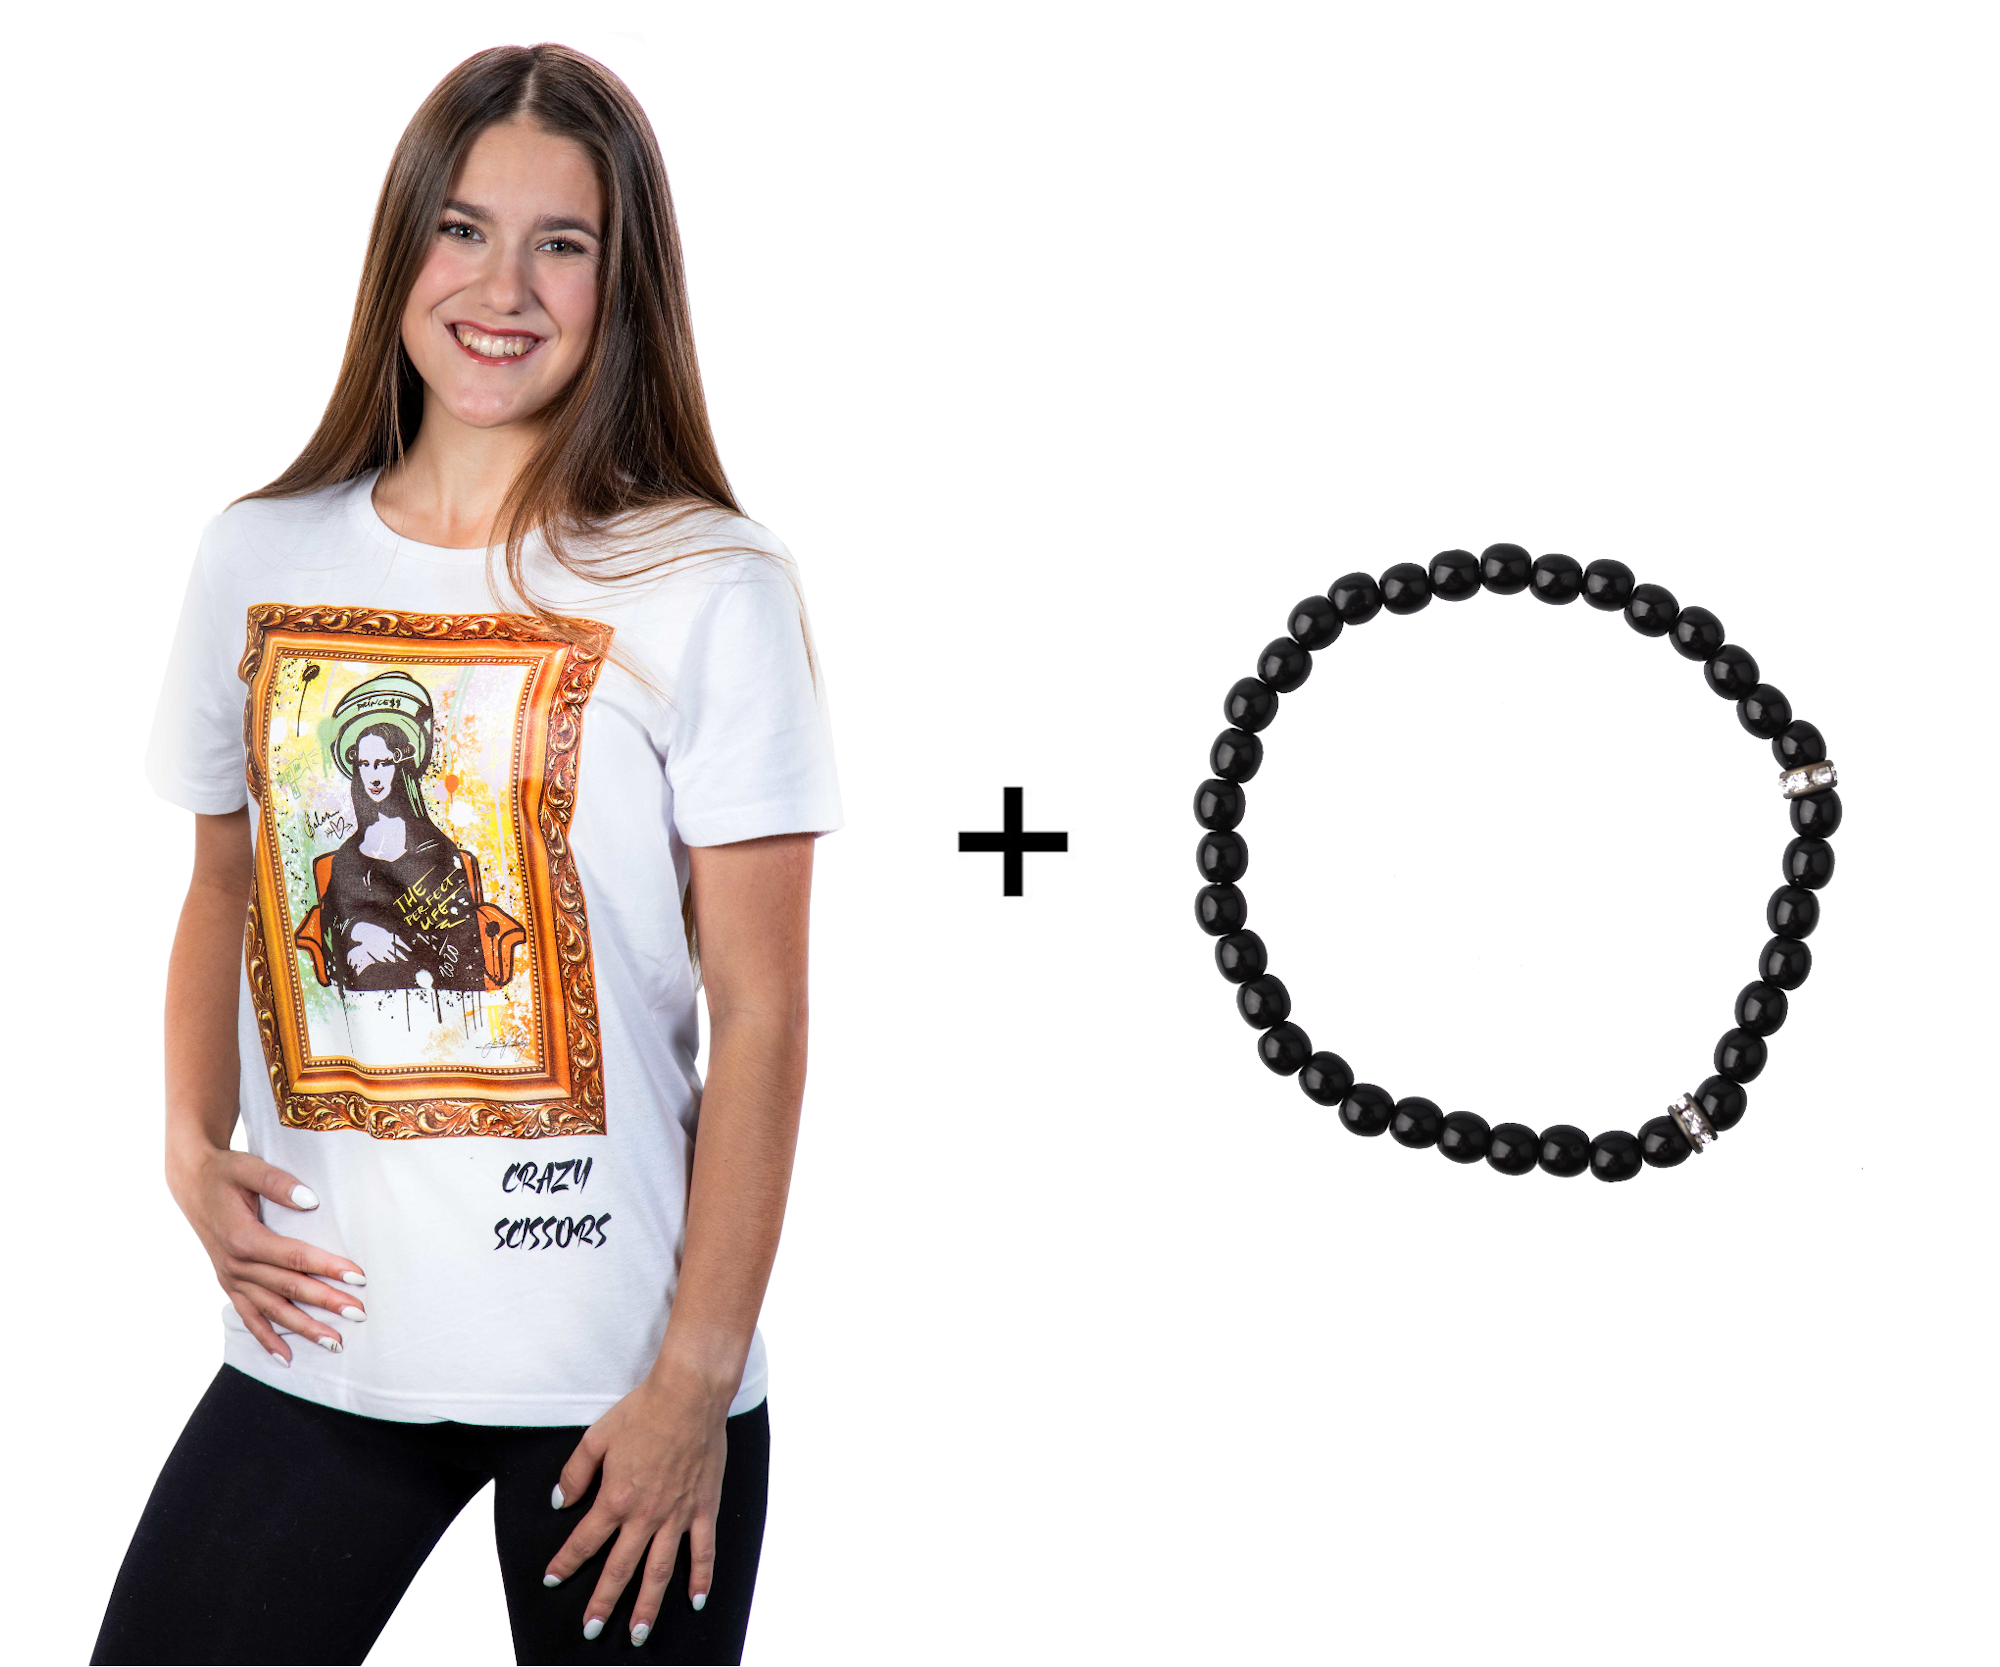 Tričko s krátkým rukávem Crazy Scissors Mona Lisa - bílé, M + náramek Loréal Preciosa zdarma + DÁREK ZDARMA